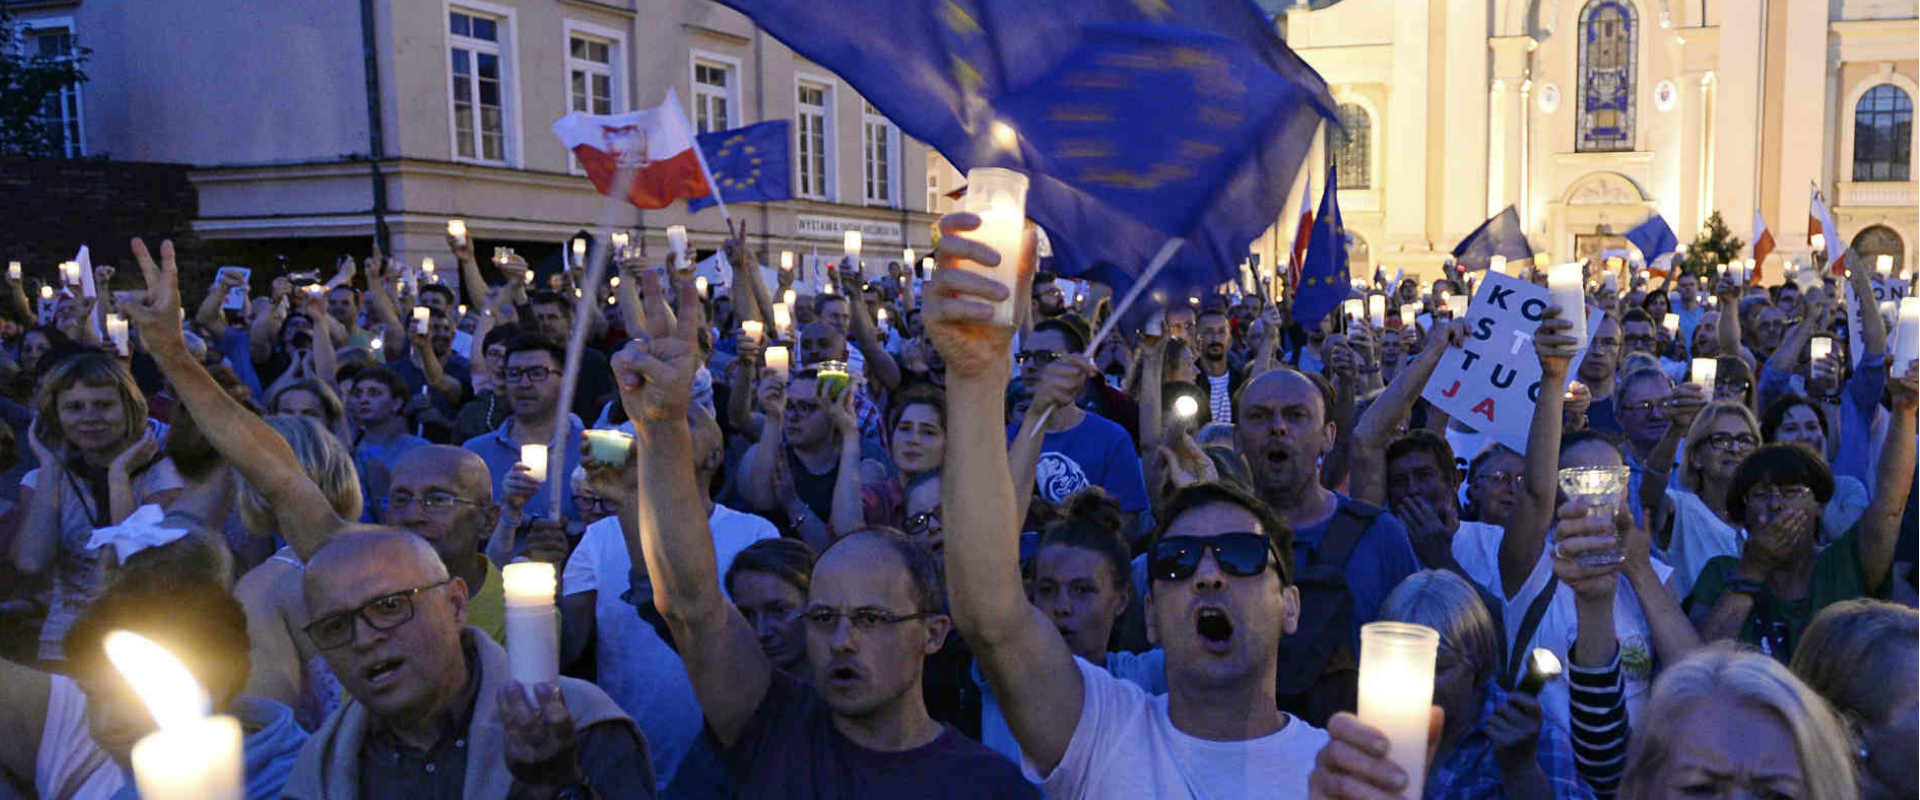 פולנים מפגינים נגד הרפורמות של מפלגת השלטון במערכת